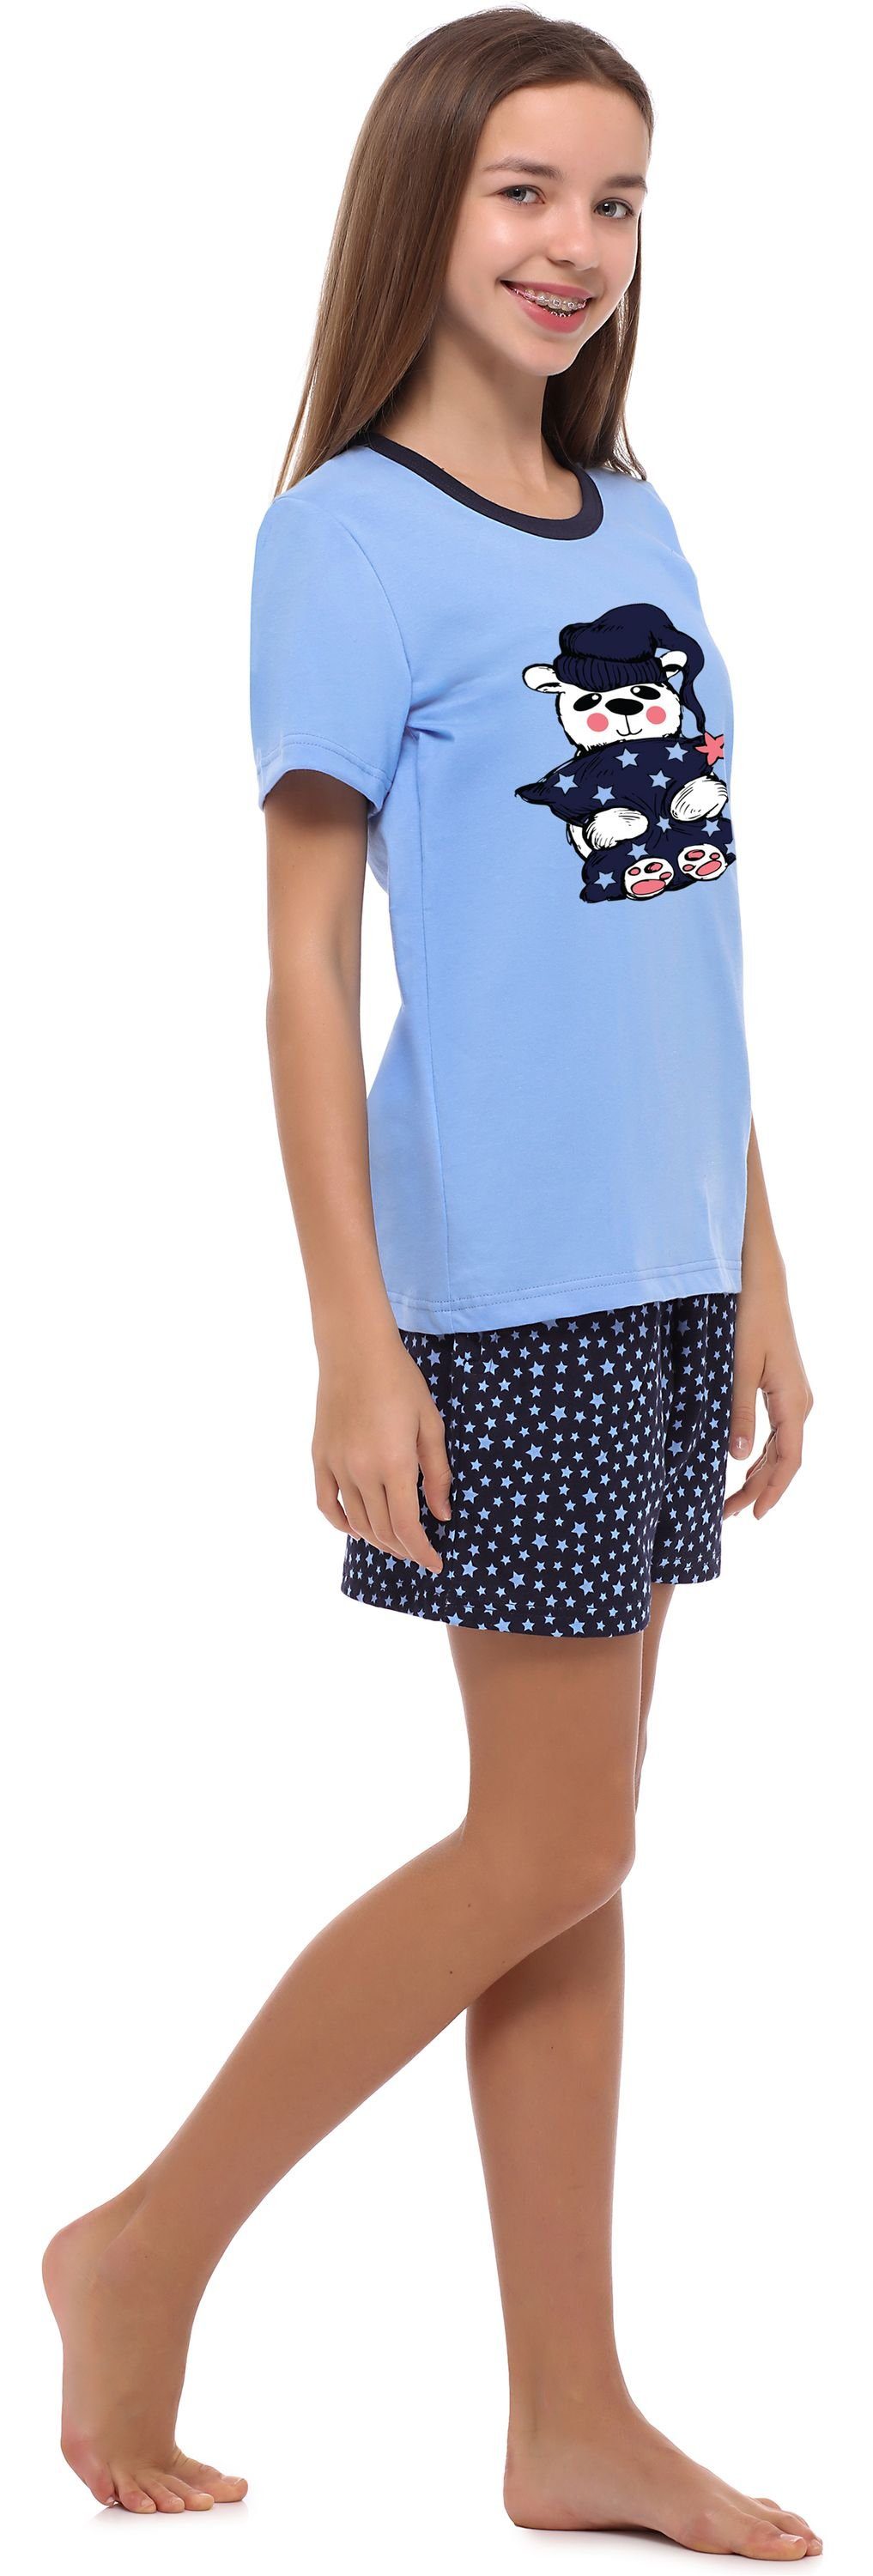 Schlafanzug Schlafanzug Style MS10-241 Mädchen Jugend Merry Blau/Sterne